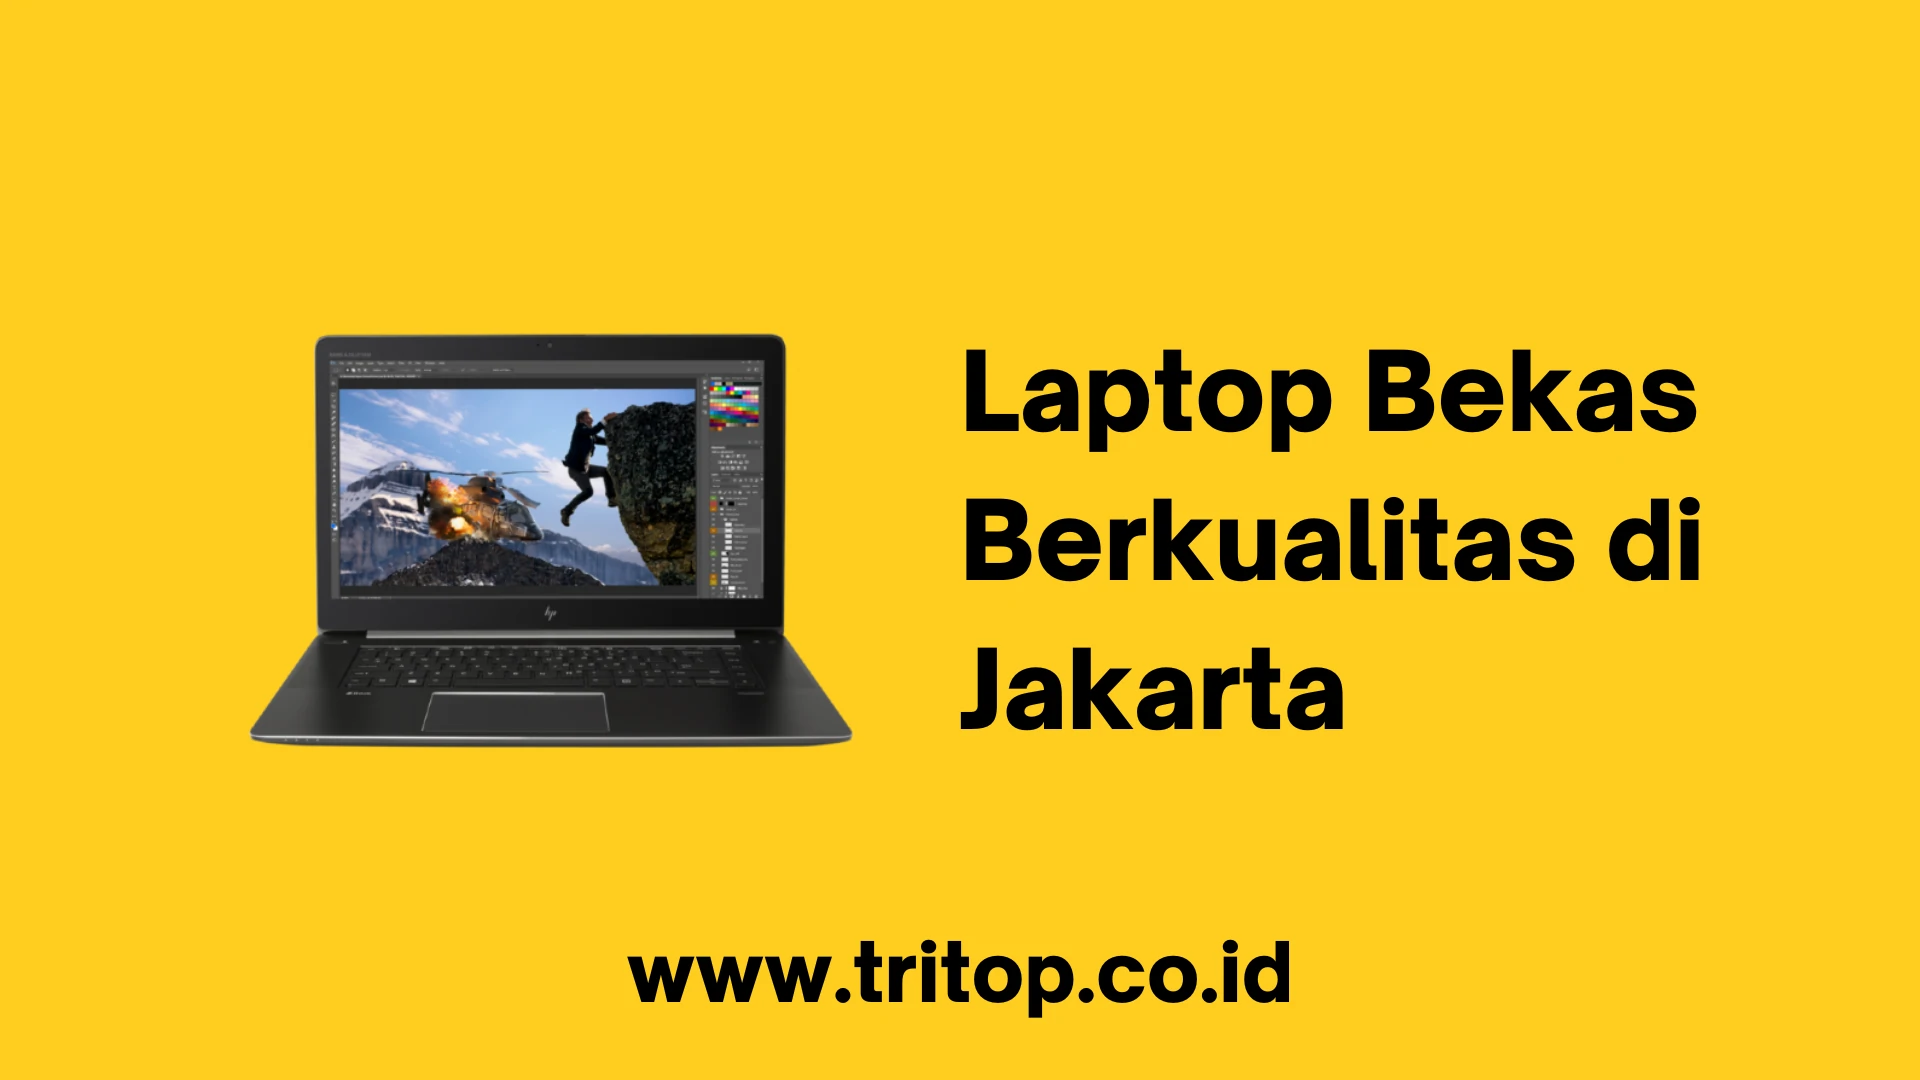 Laptop Bekas Berkualitas Jakarta